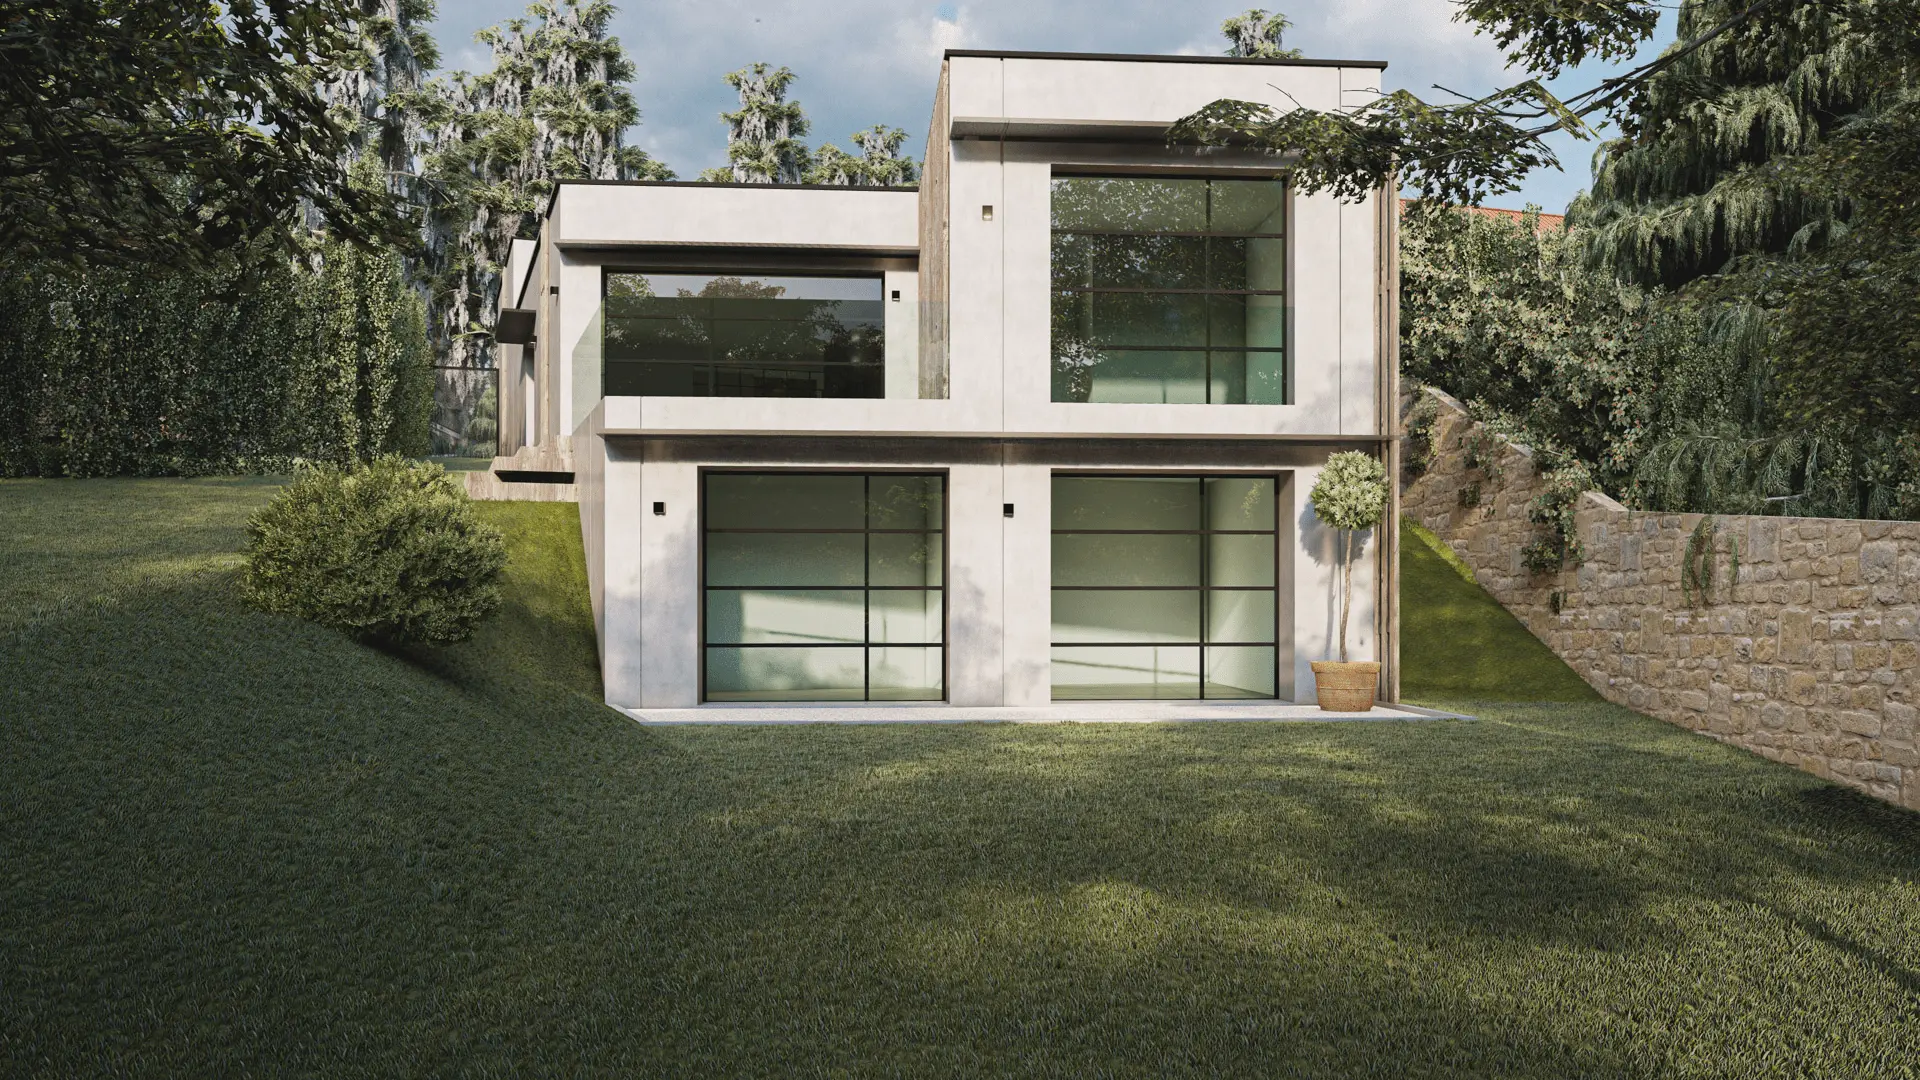 vivienda prefabricada en hormigón modelo Oleiros_2